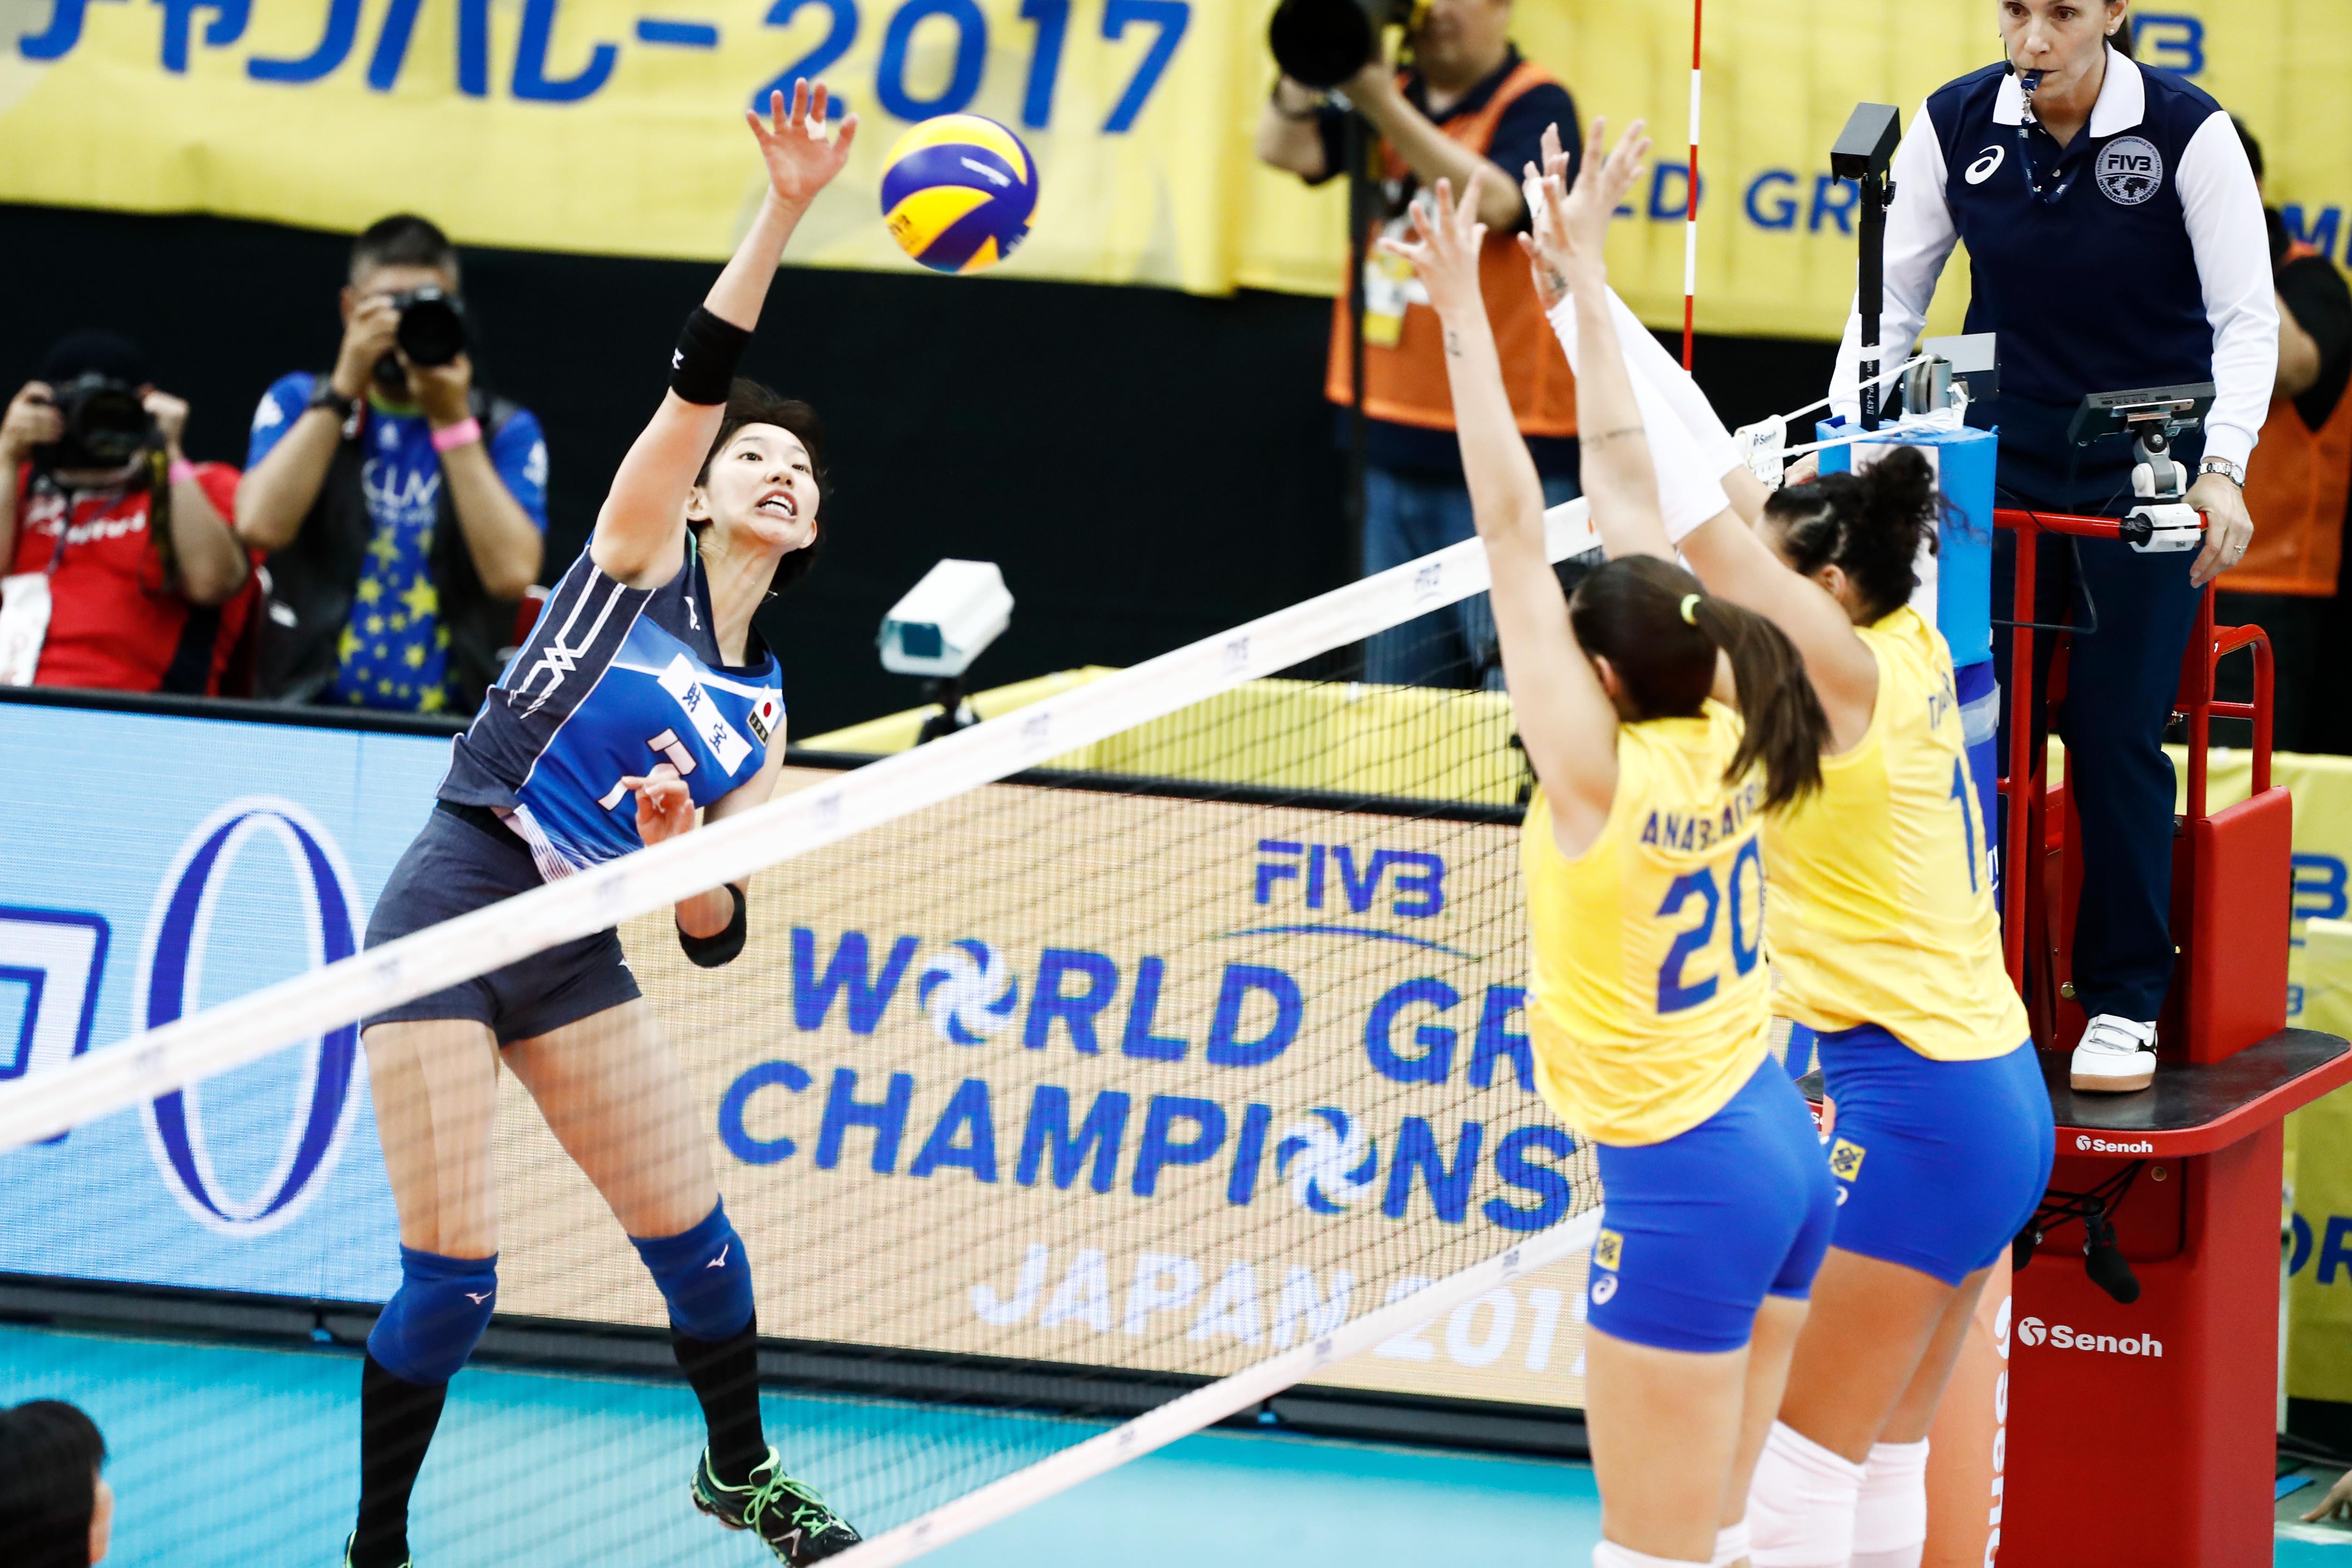 Seleção Brasileira feminina de vôlei vence 2º jogo em Tóquio no tie break